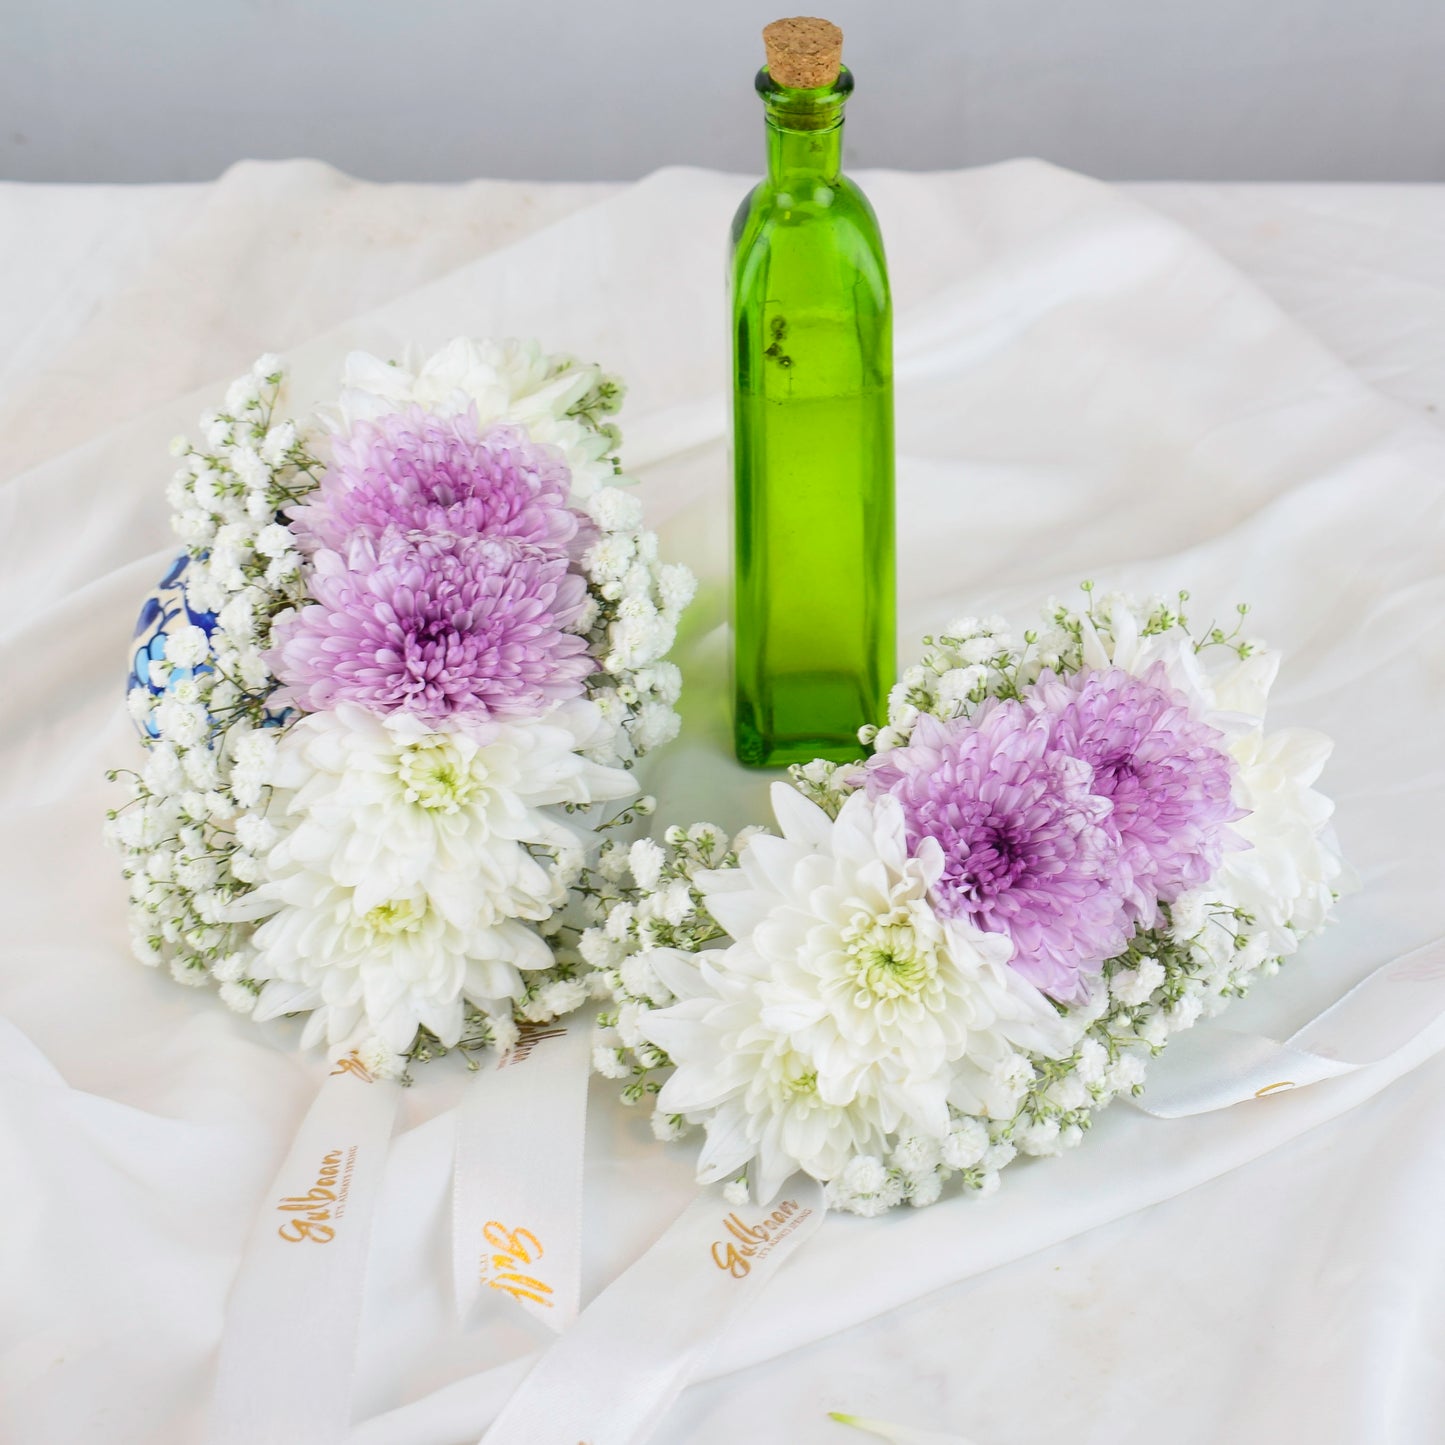 Gajra Pair with White and Purple Chrysanthemums